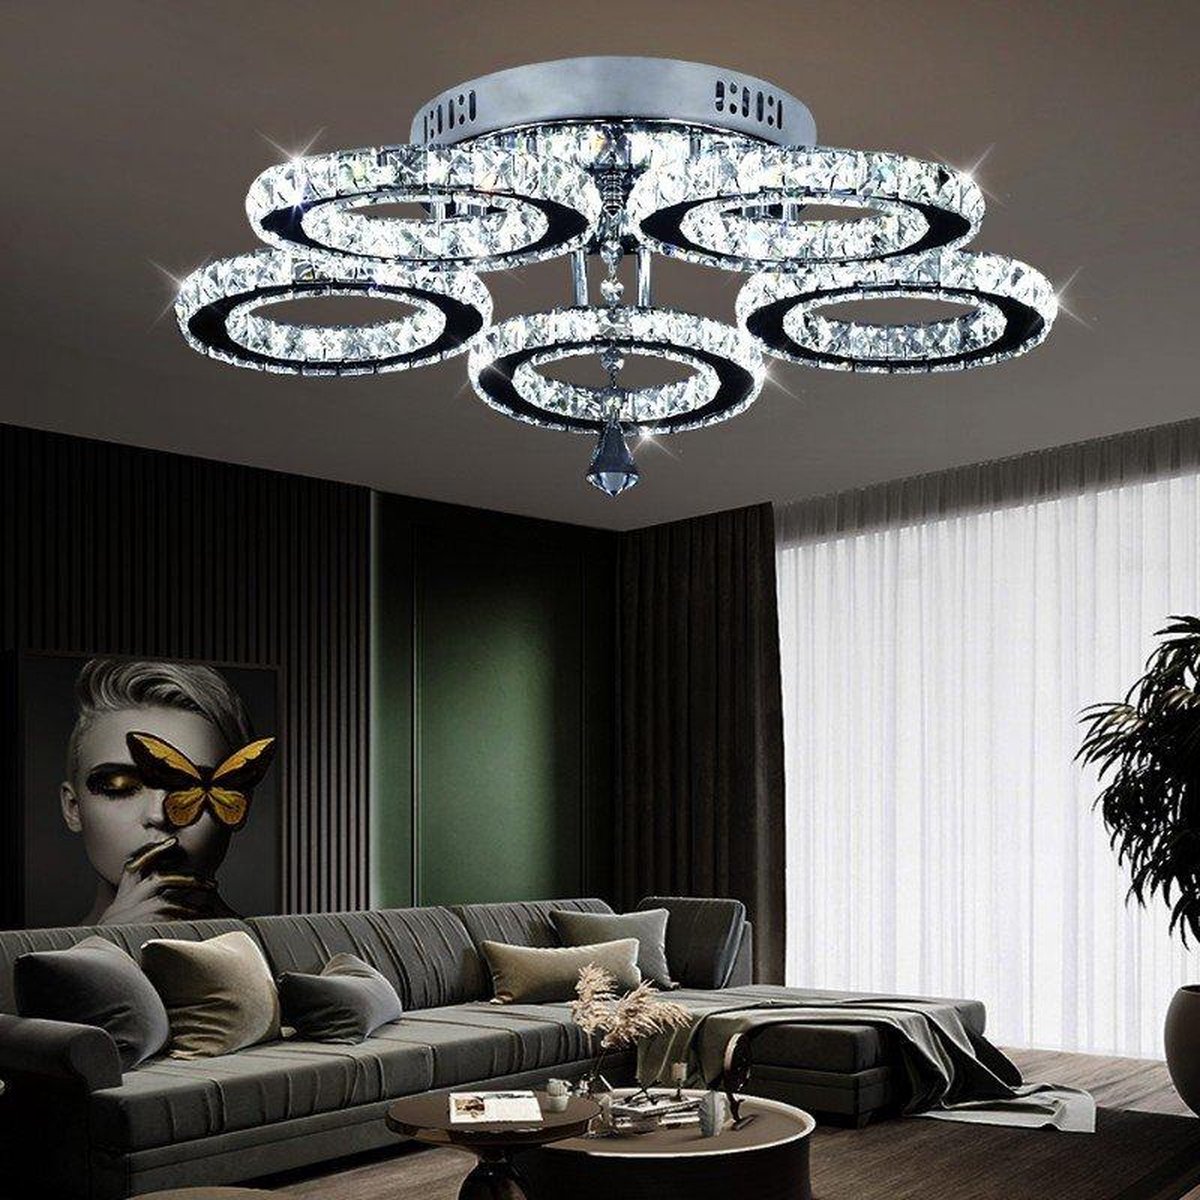 Luminaire à LED plafonnier rond en cristal luxe pour salon chambre